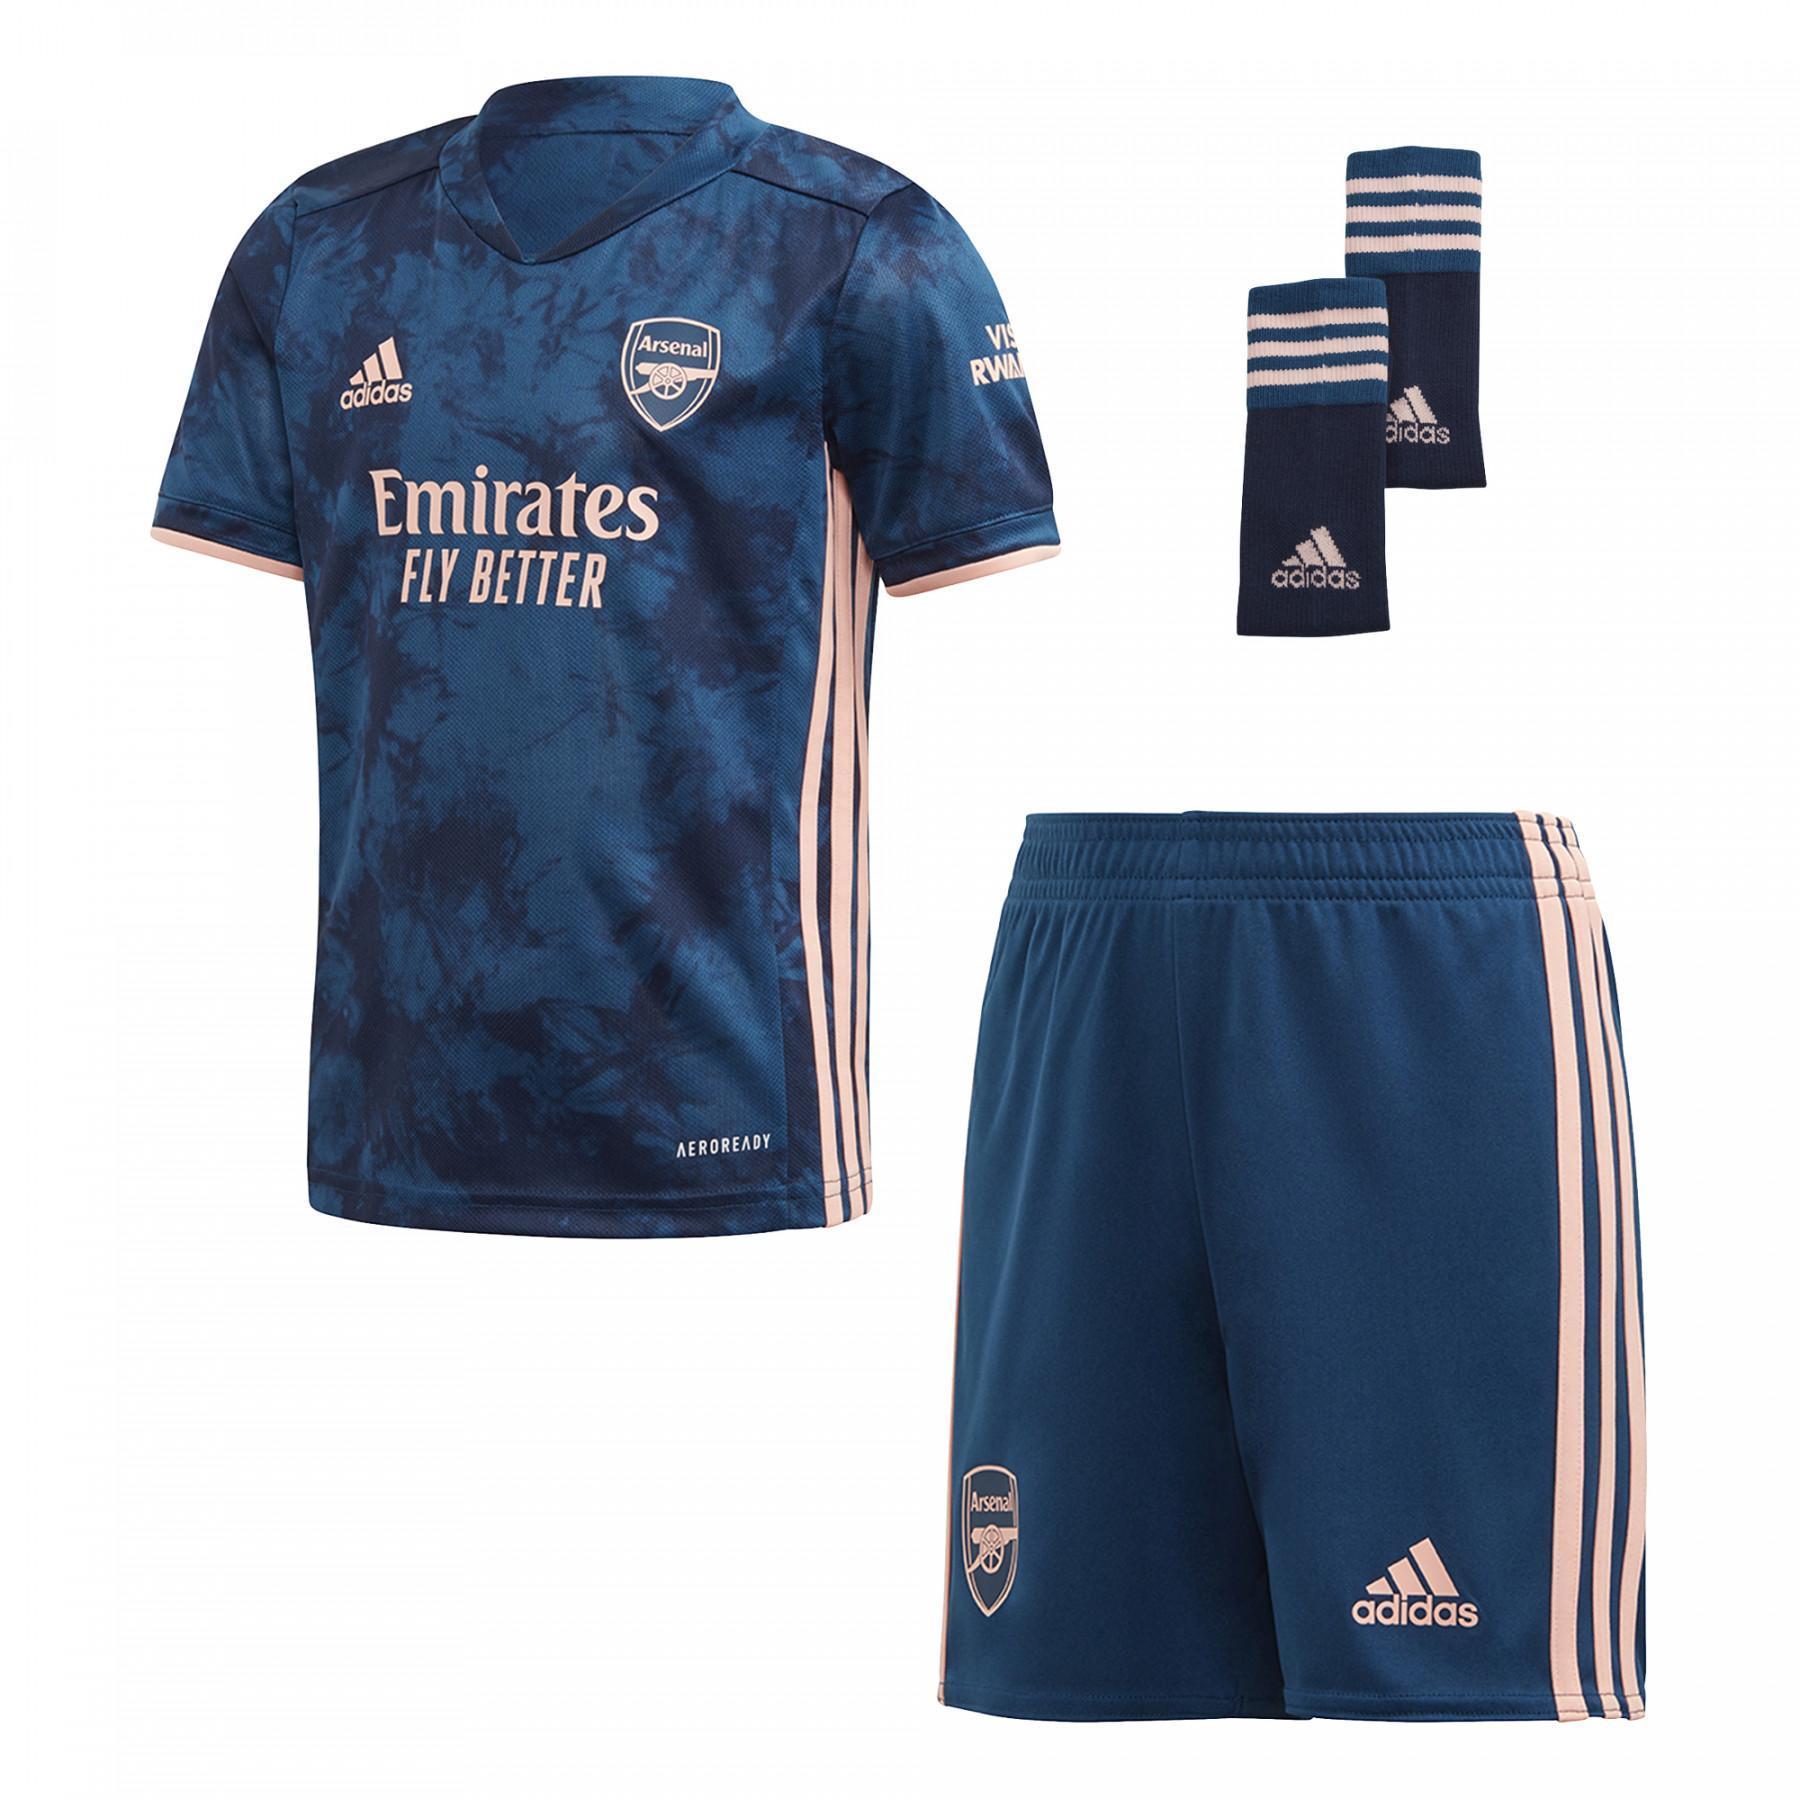 Mini-kit barn tredje Arsenal FC 2020/21